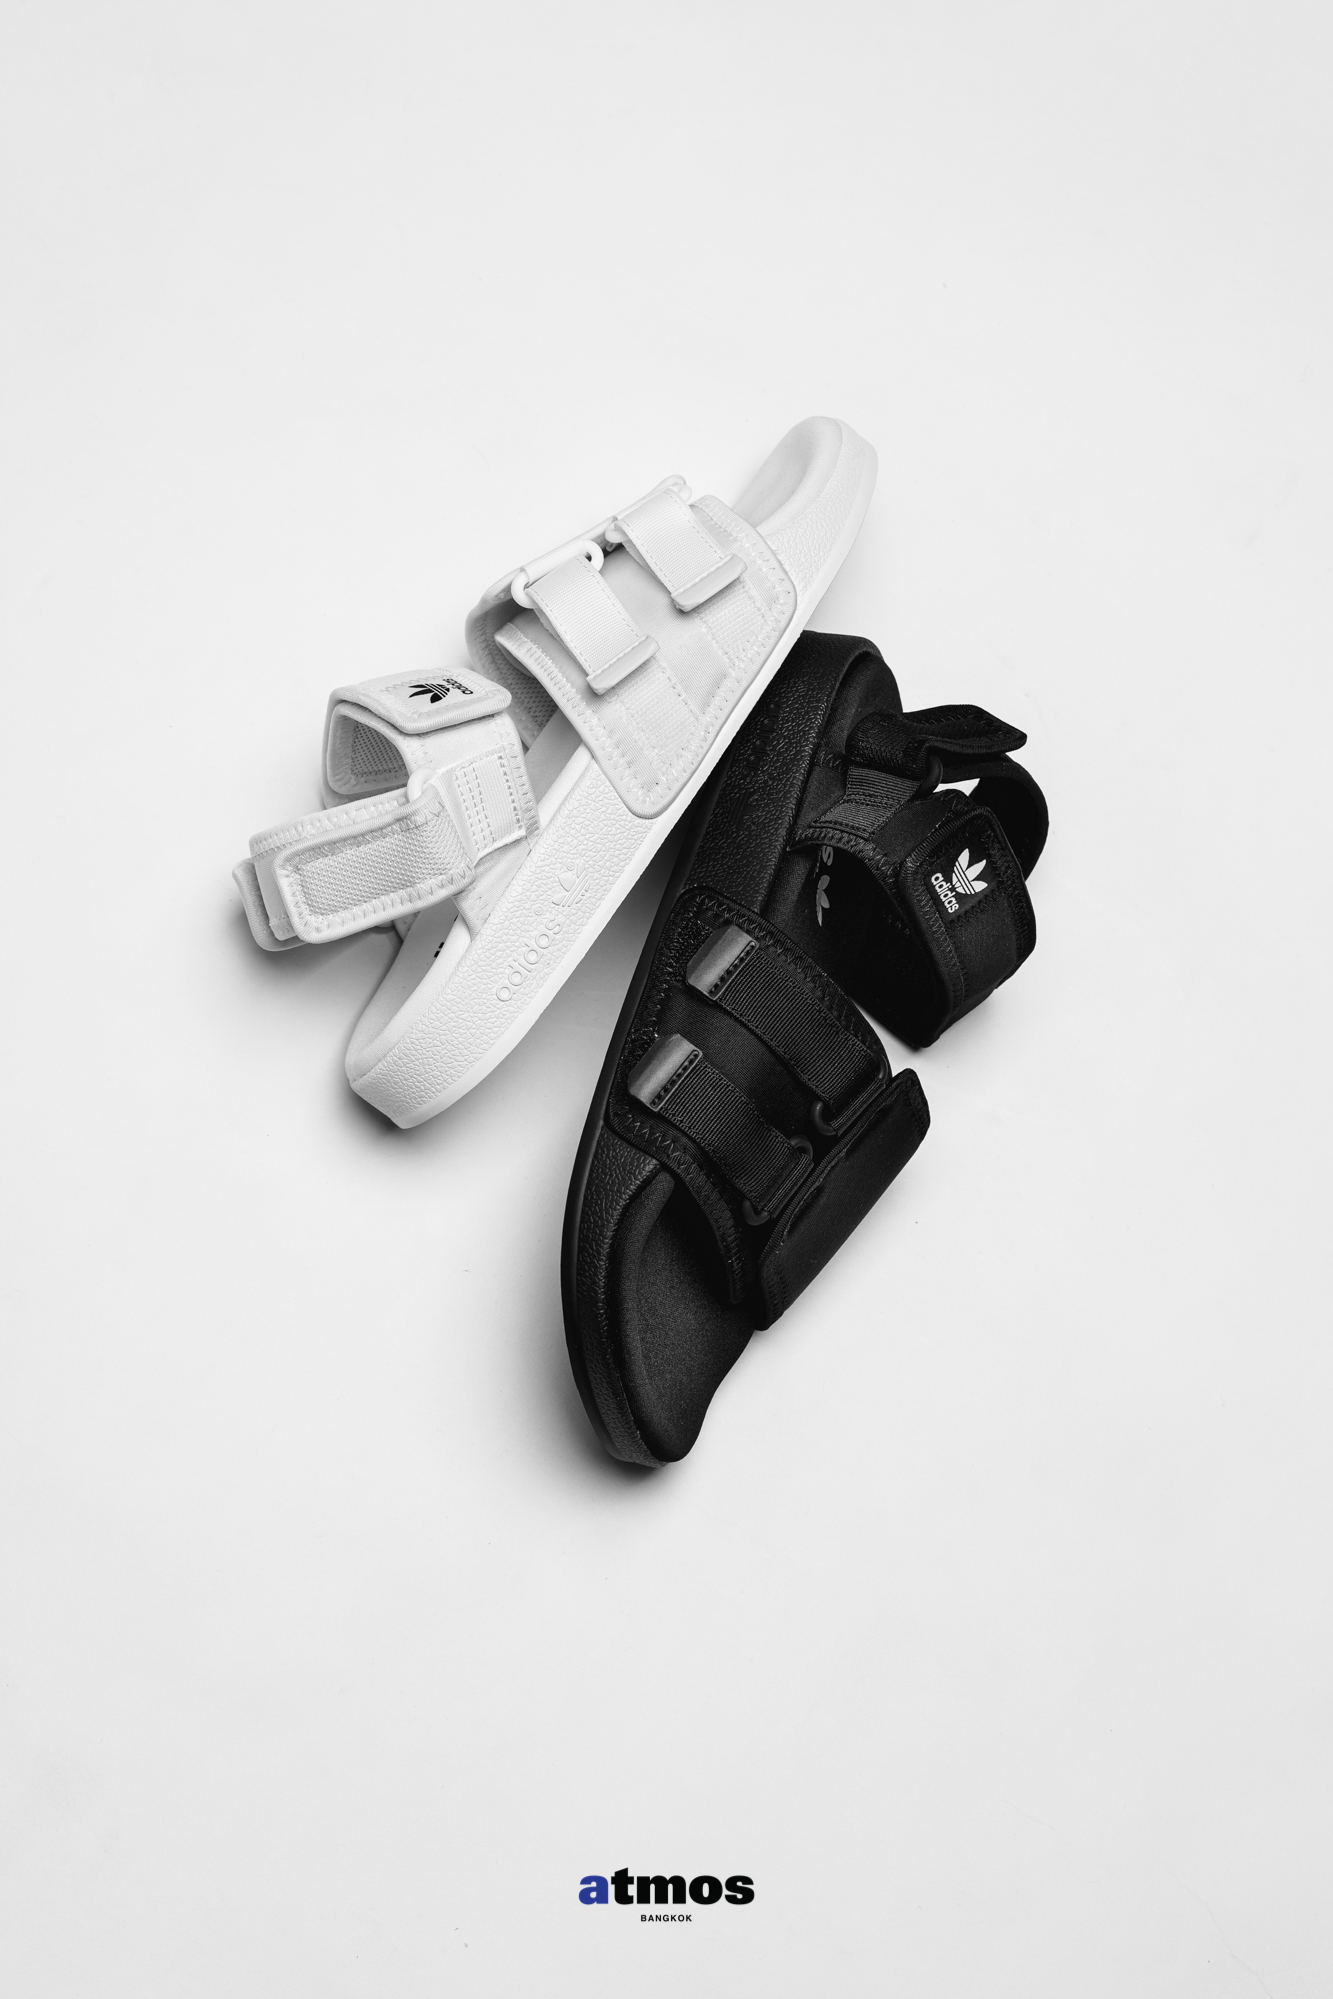 มาแล้ว adidas New ADILETTE SANDAL 4.0 รองเท้าซานดัลสวยๆ มาใหม่ ต้อนรับซัมเมอร์ 2021